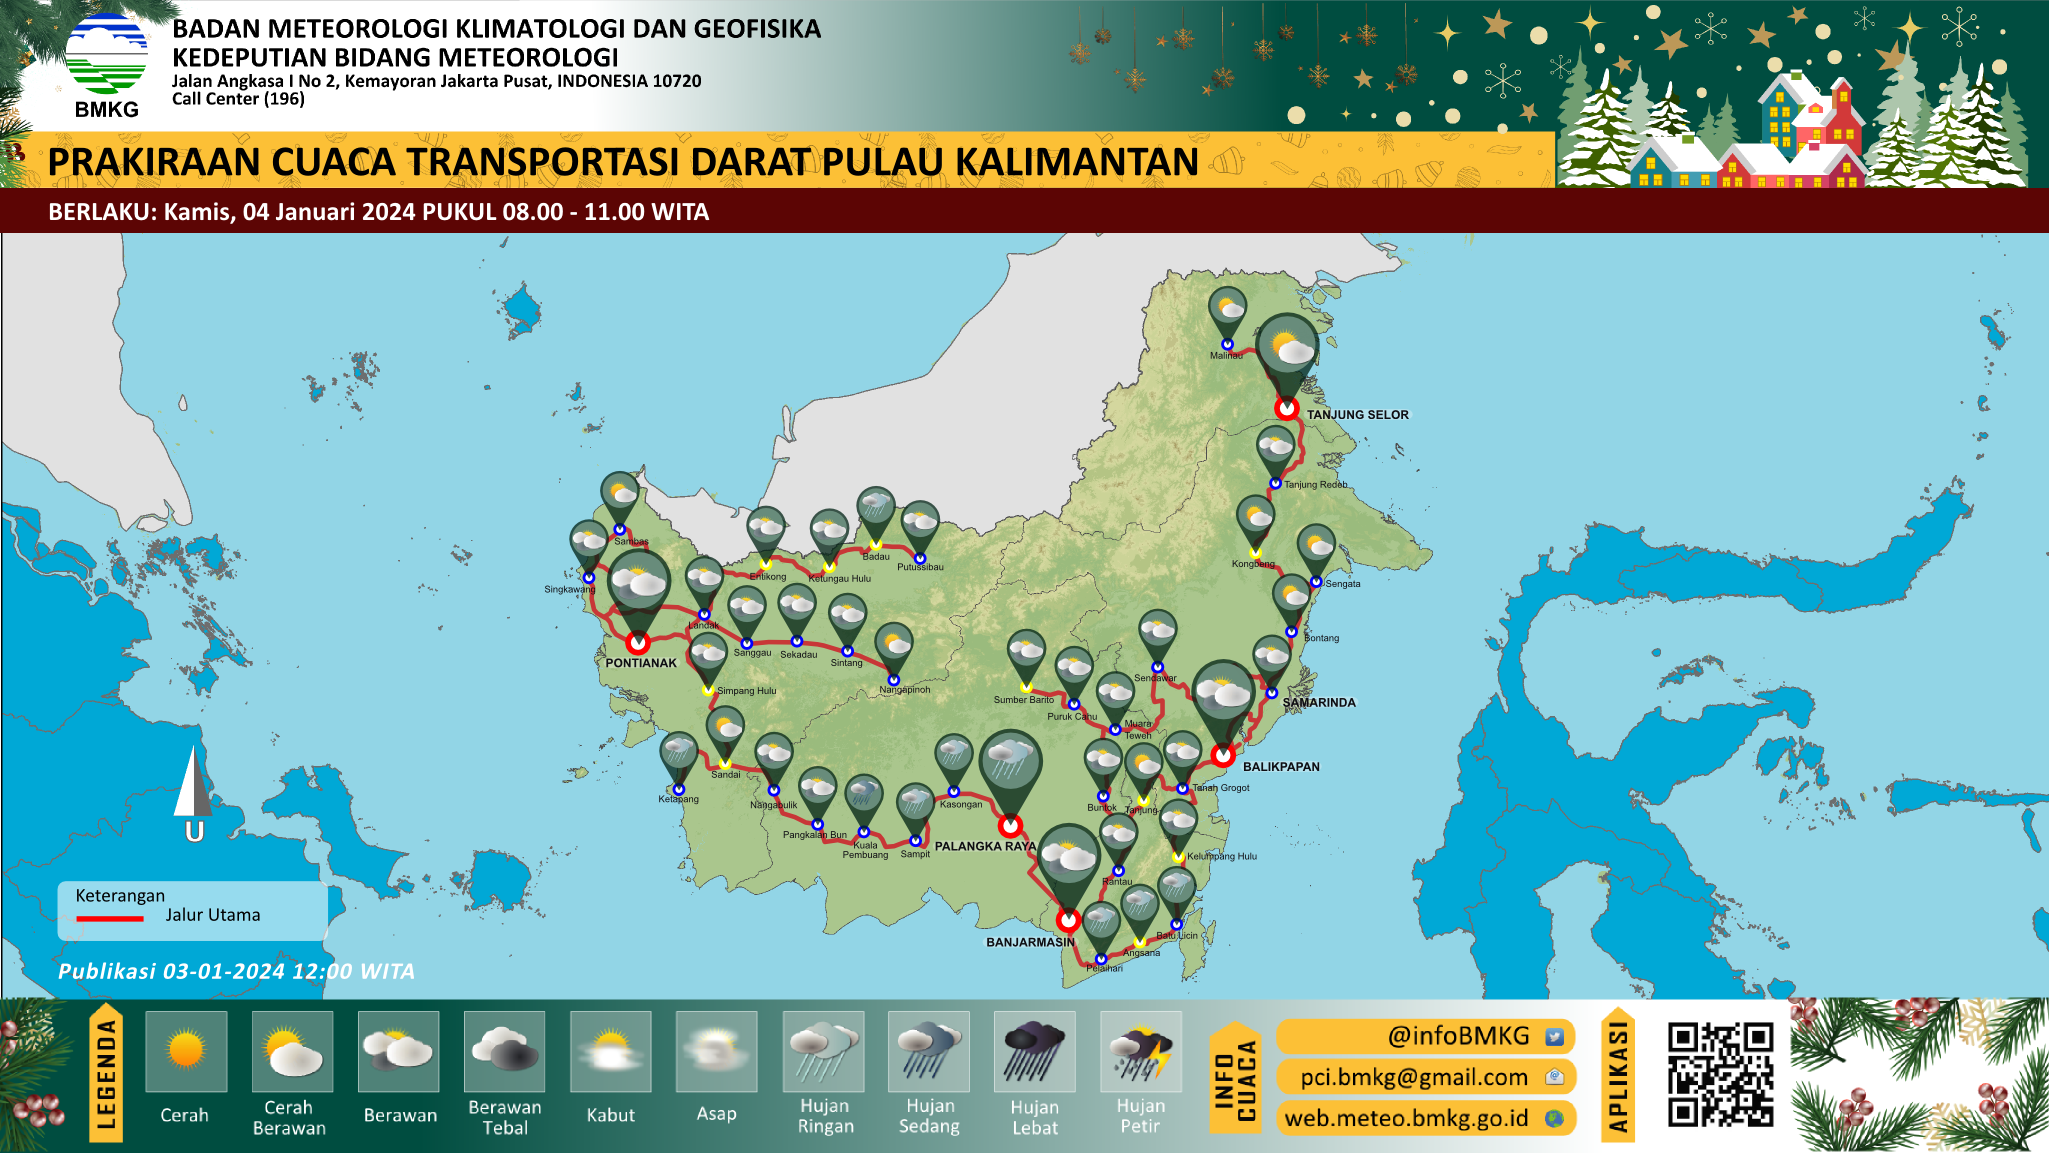 Prakiraan cuaca posko lebaran Pulau Kalimantan